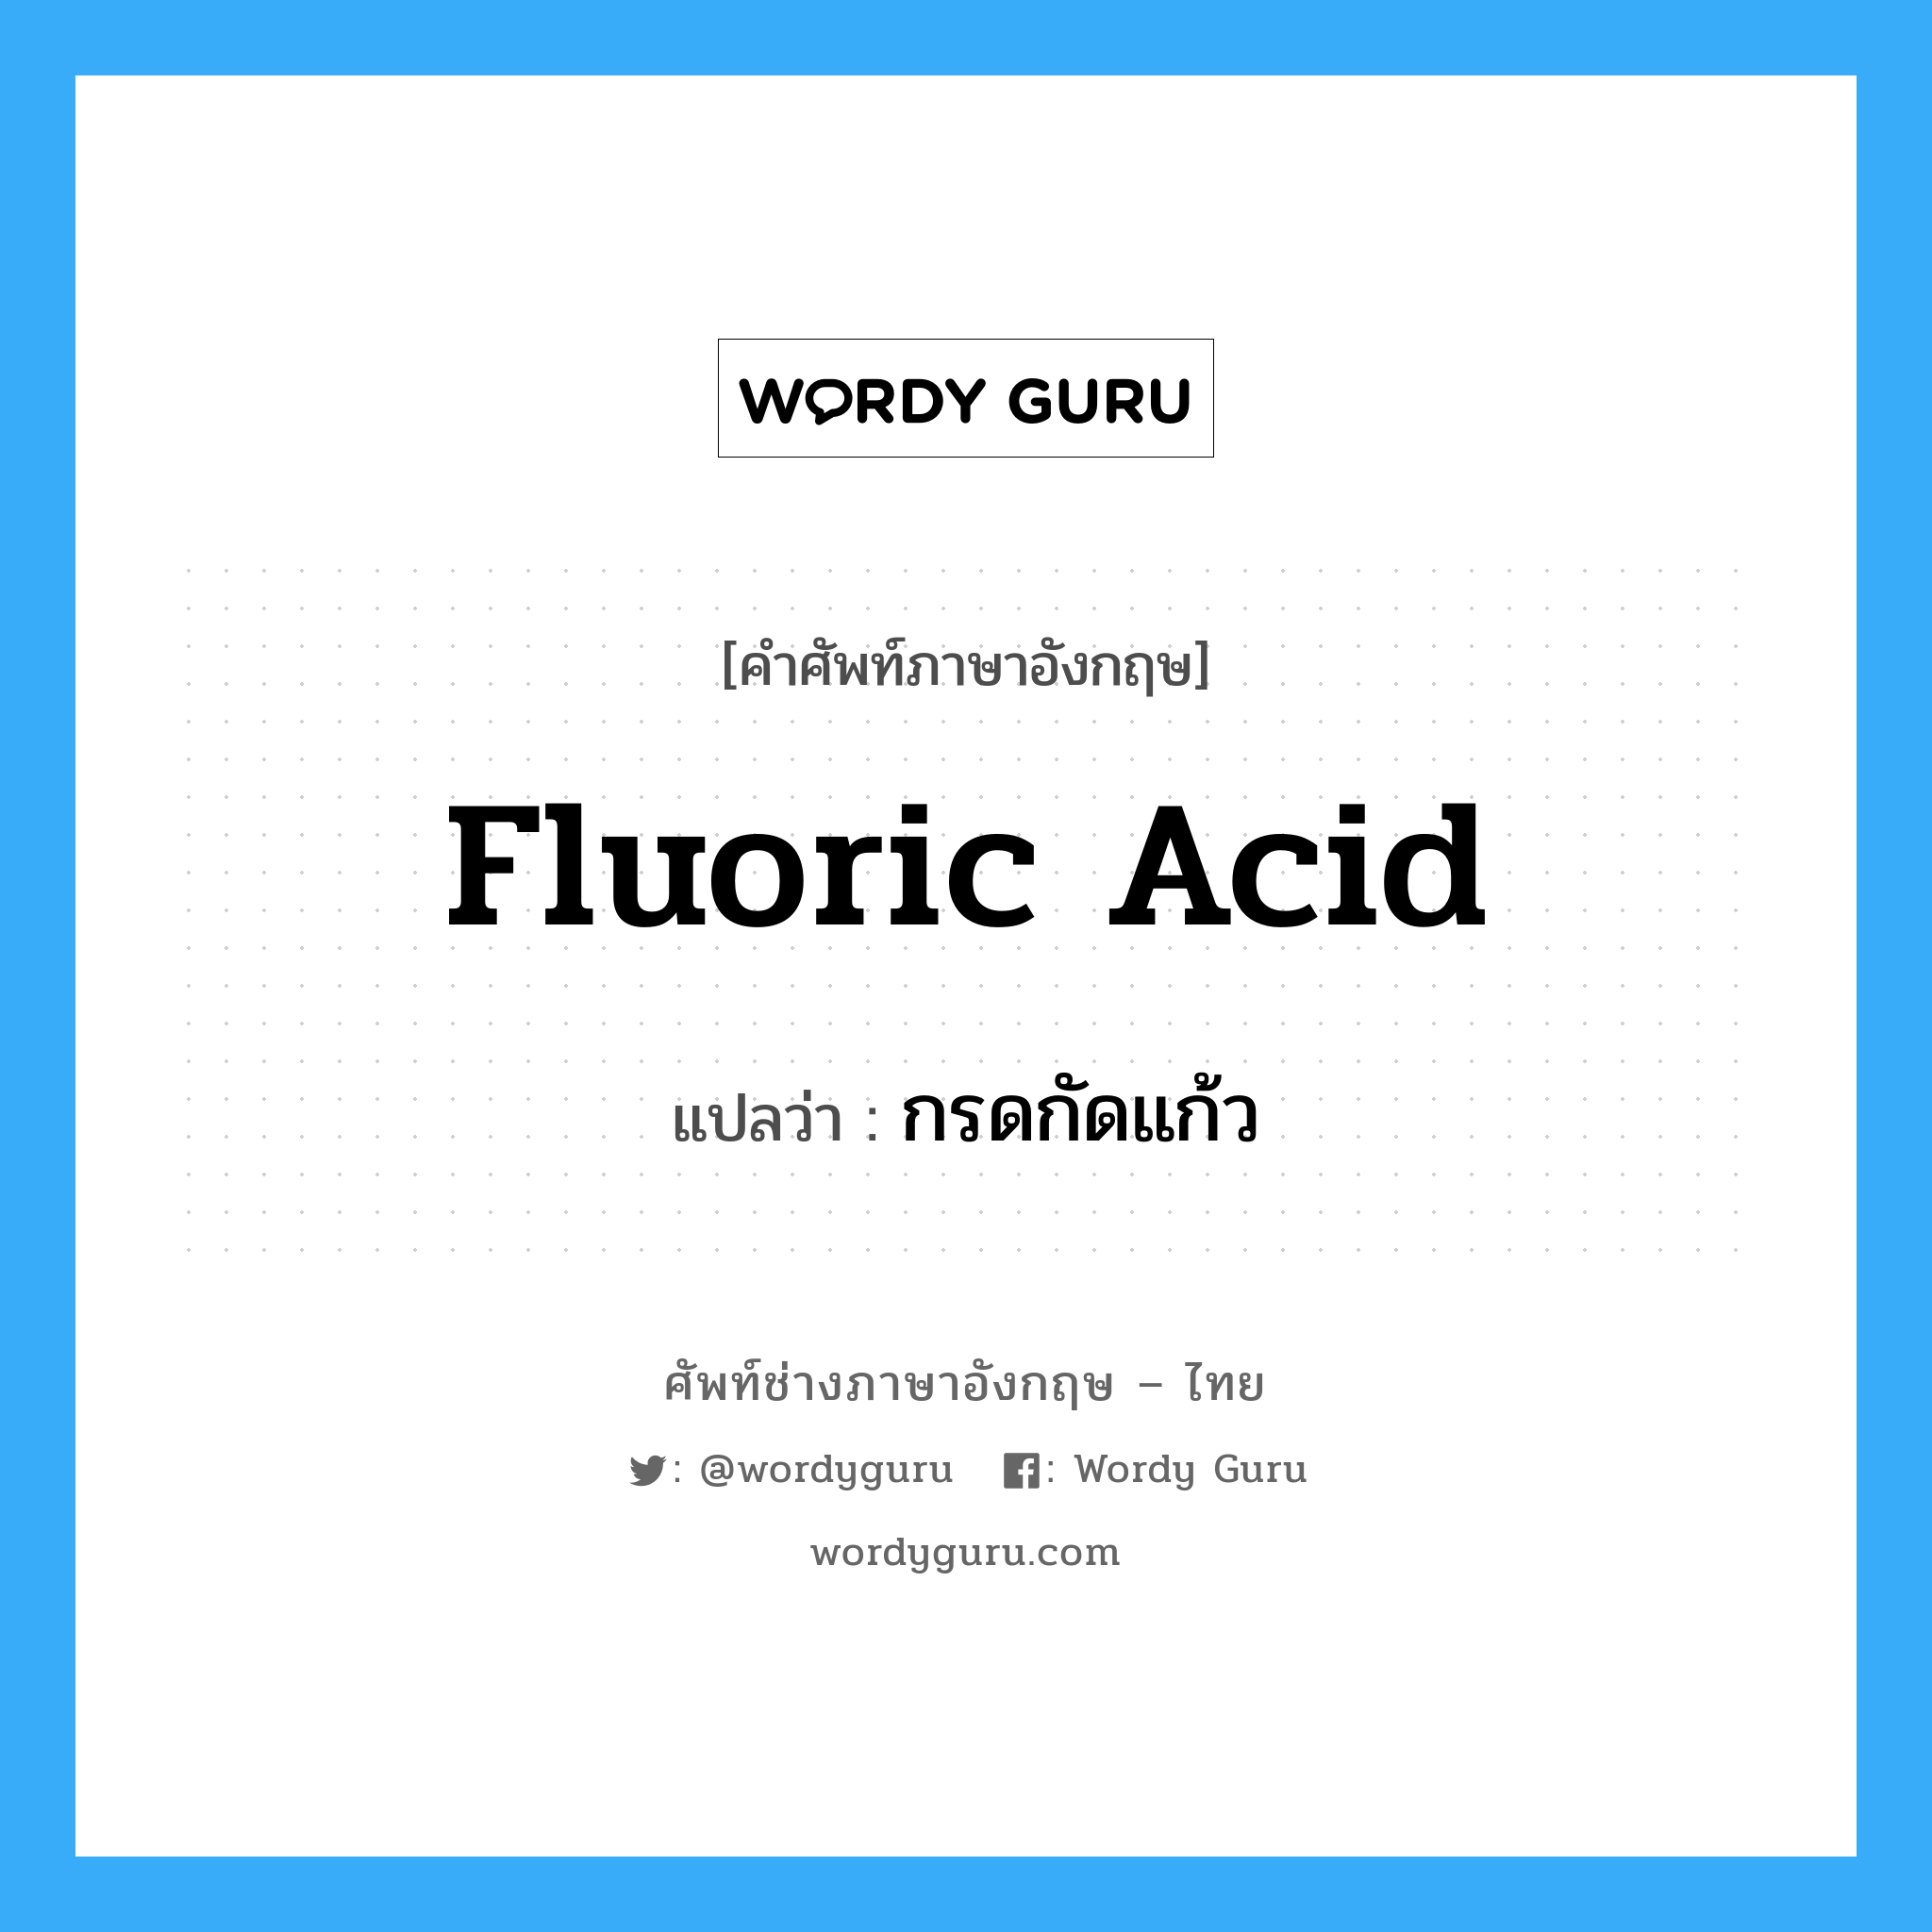 fluoric acid แปลว่า?, คำศัพท์ช่างภาษาอังกฤษ - ไทย fluoric acid คำศัพท์ภาษาอังกฤษ fluoric acid แปลว่า กรดกัดแก้ว